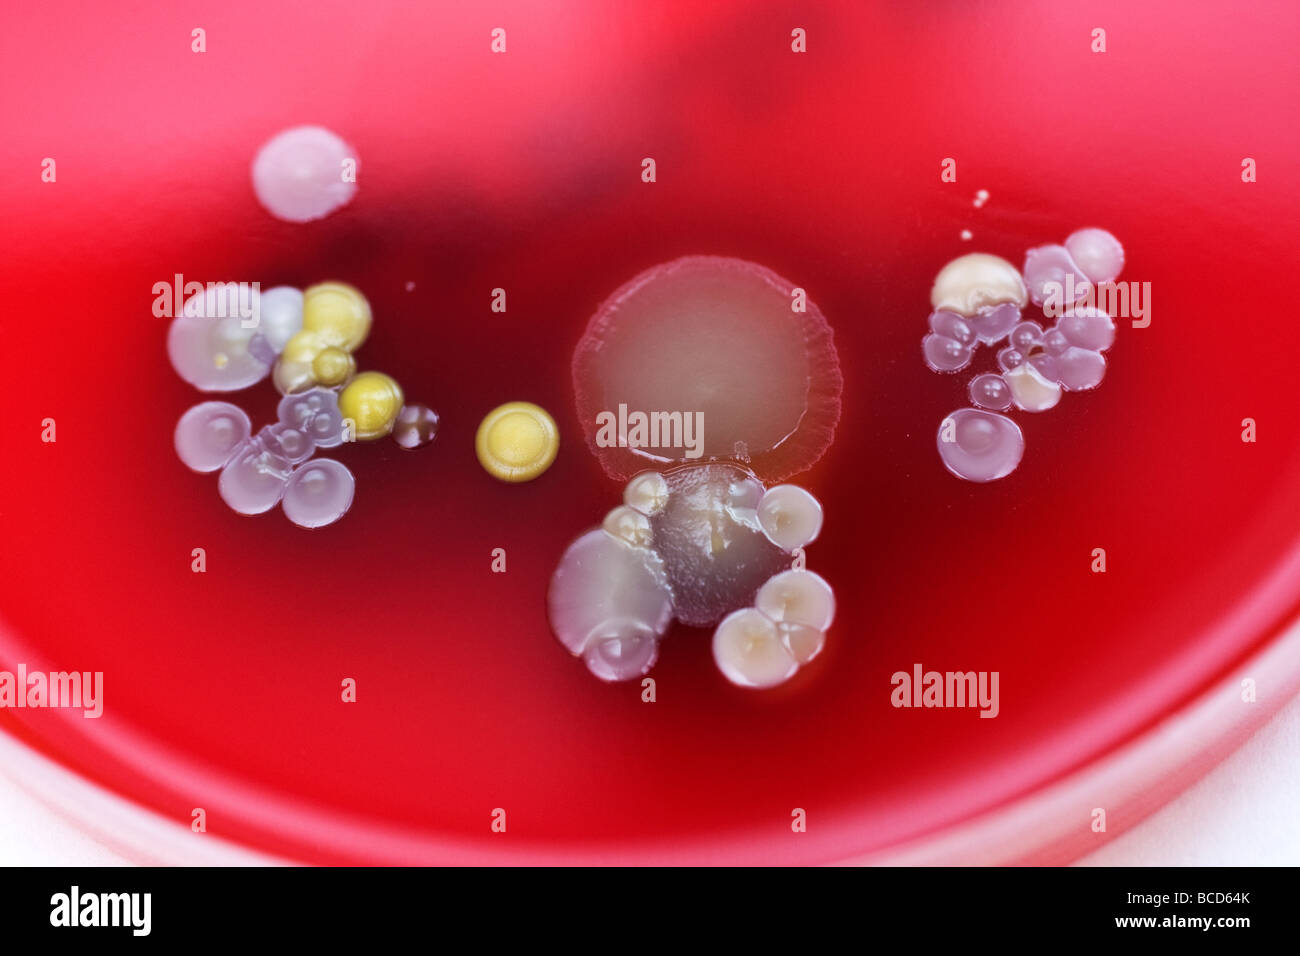 Piastre di Petri contenenti le colonie di Staphylococcus epidermidis & Diptheroids Foto Stock